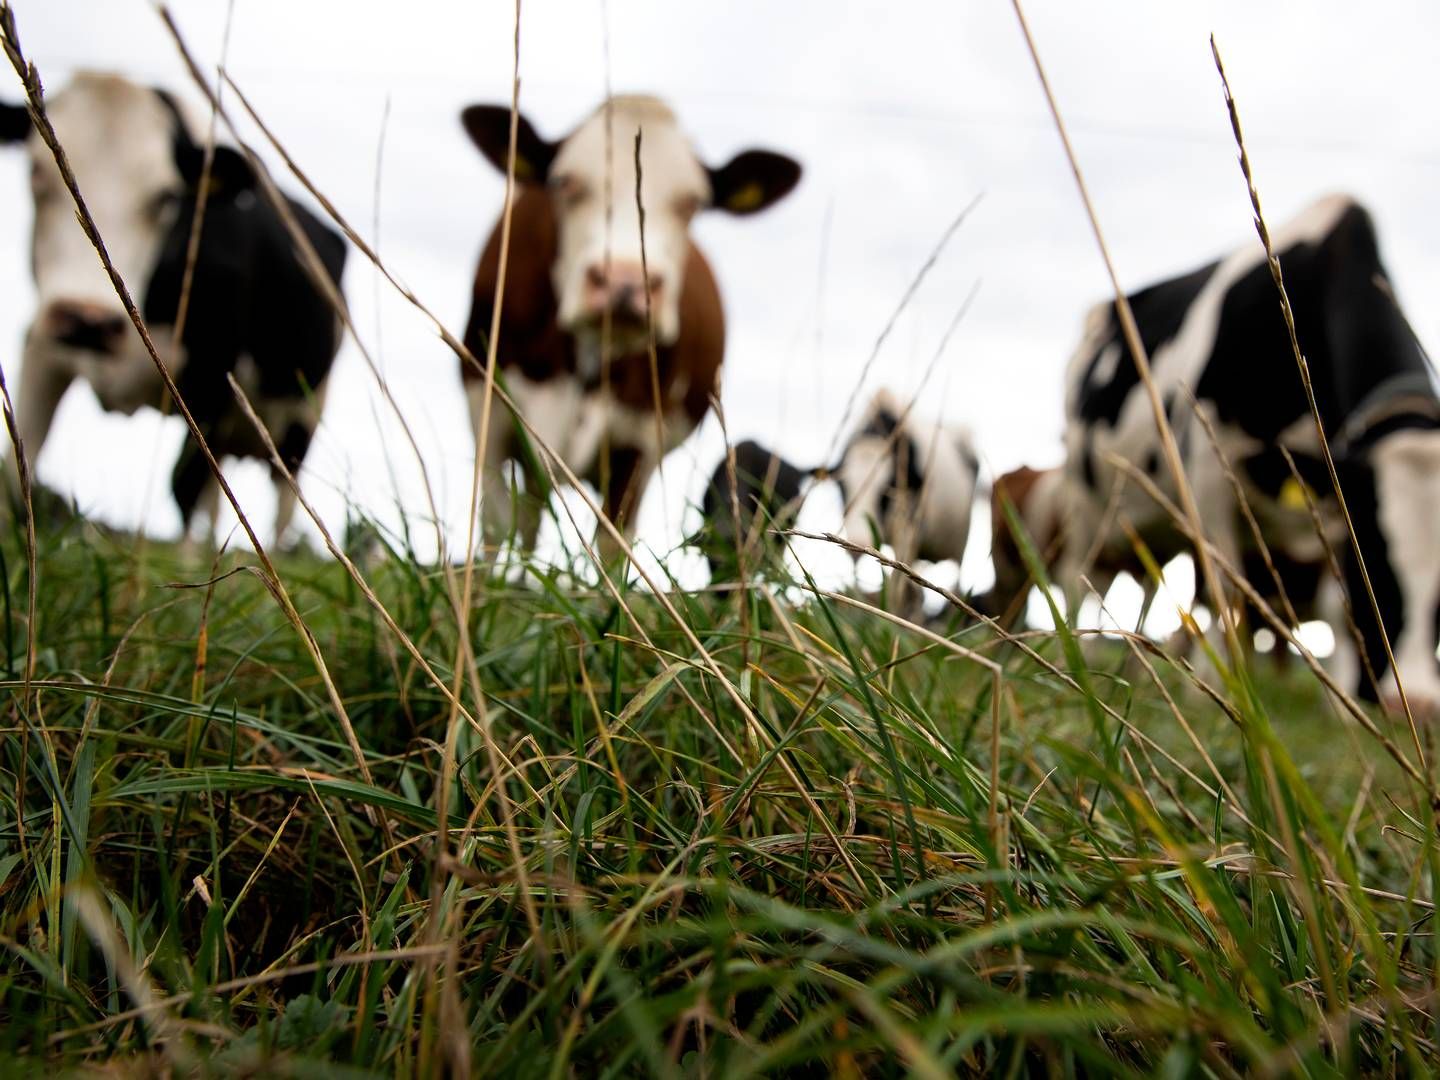 Ifølge det centrale husdyrbrugsregister har Mosevang Mælk en besætning på 2.646 køer. | Foto: Finn Frandsen